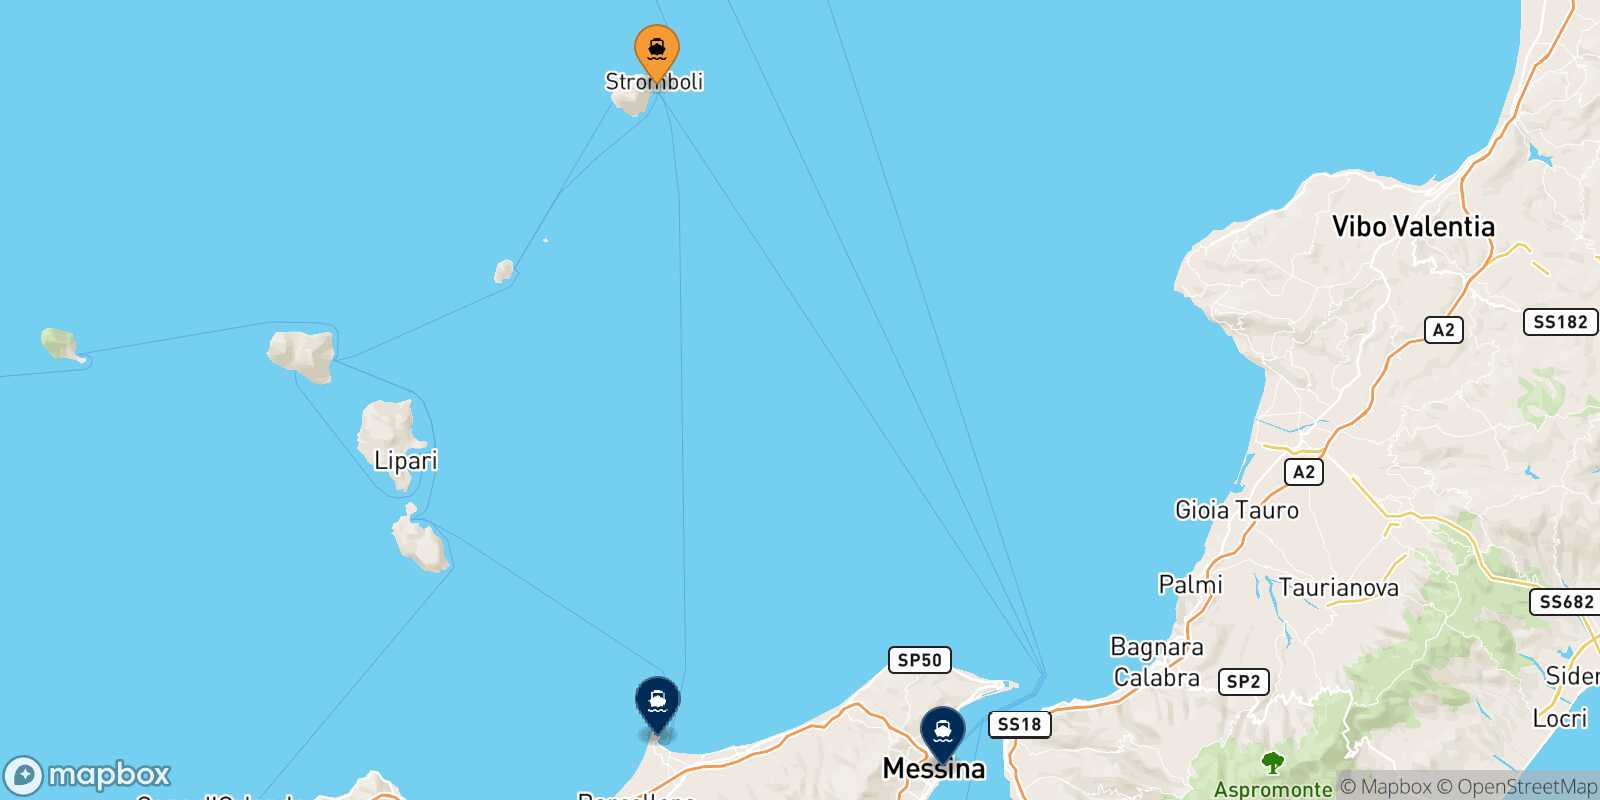 Mappa delle destinazioni raggiungibili da Stromboli